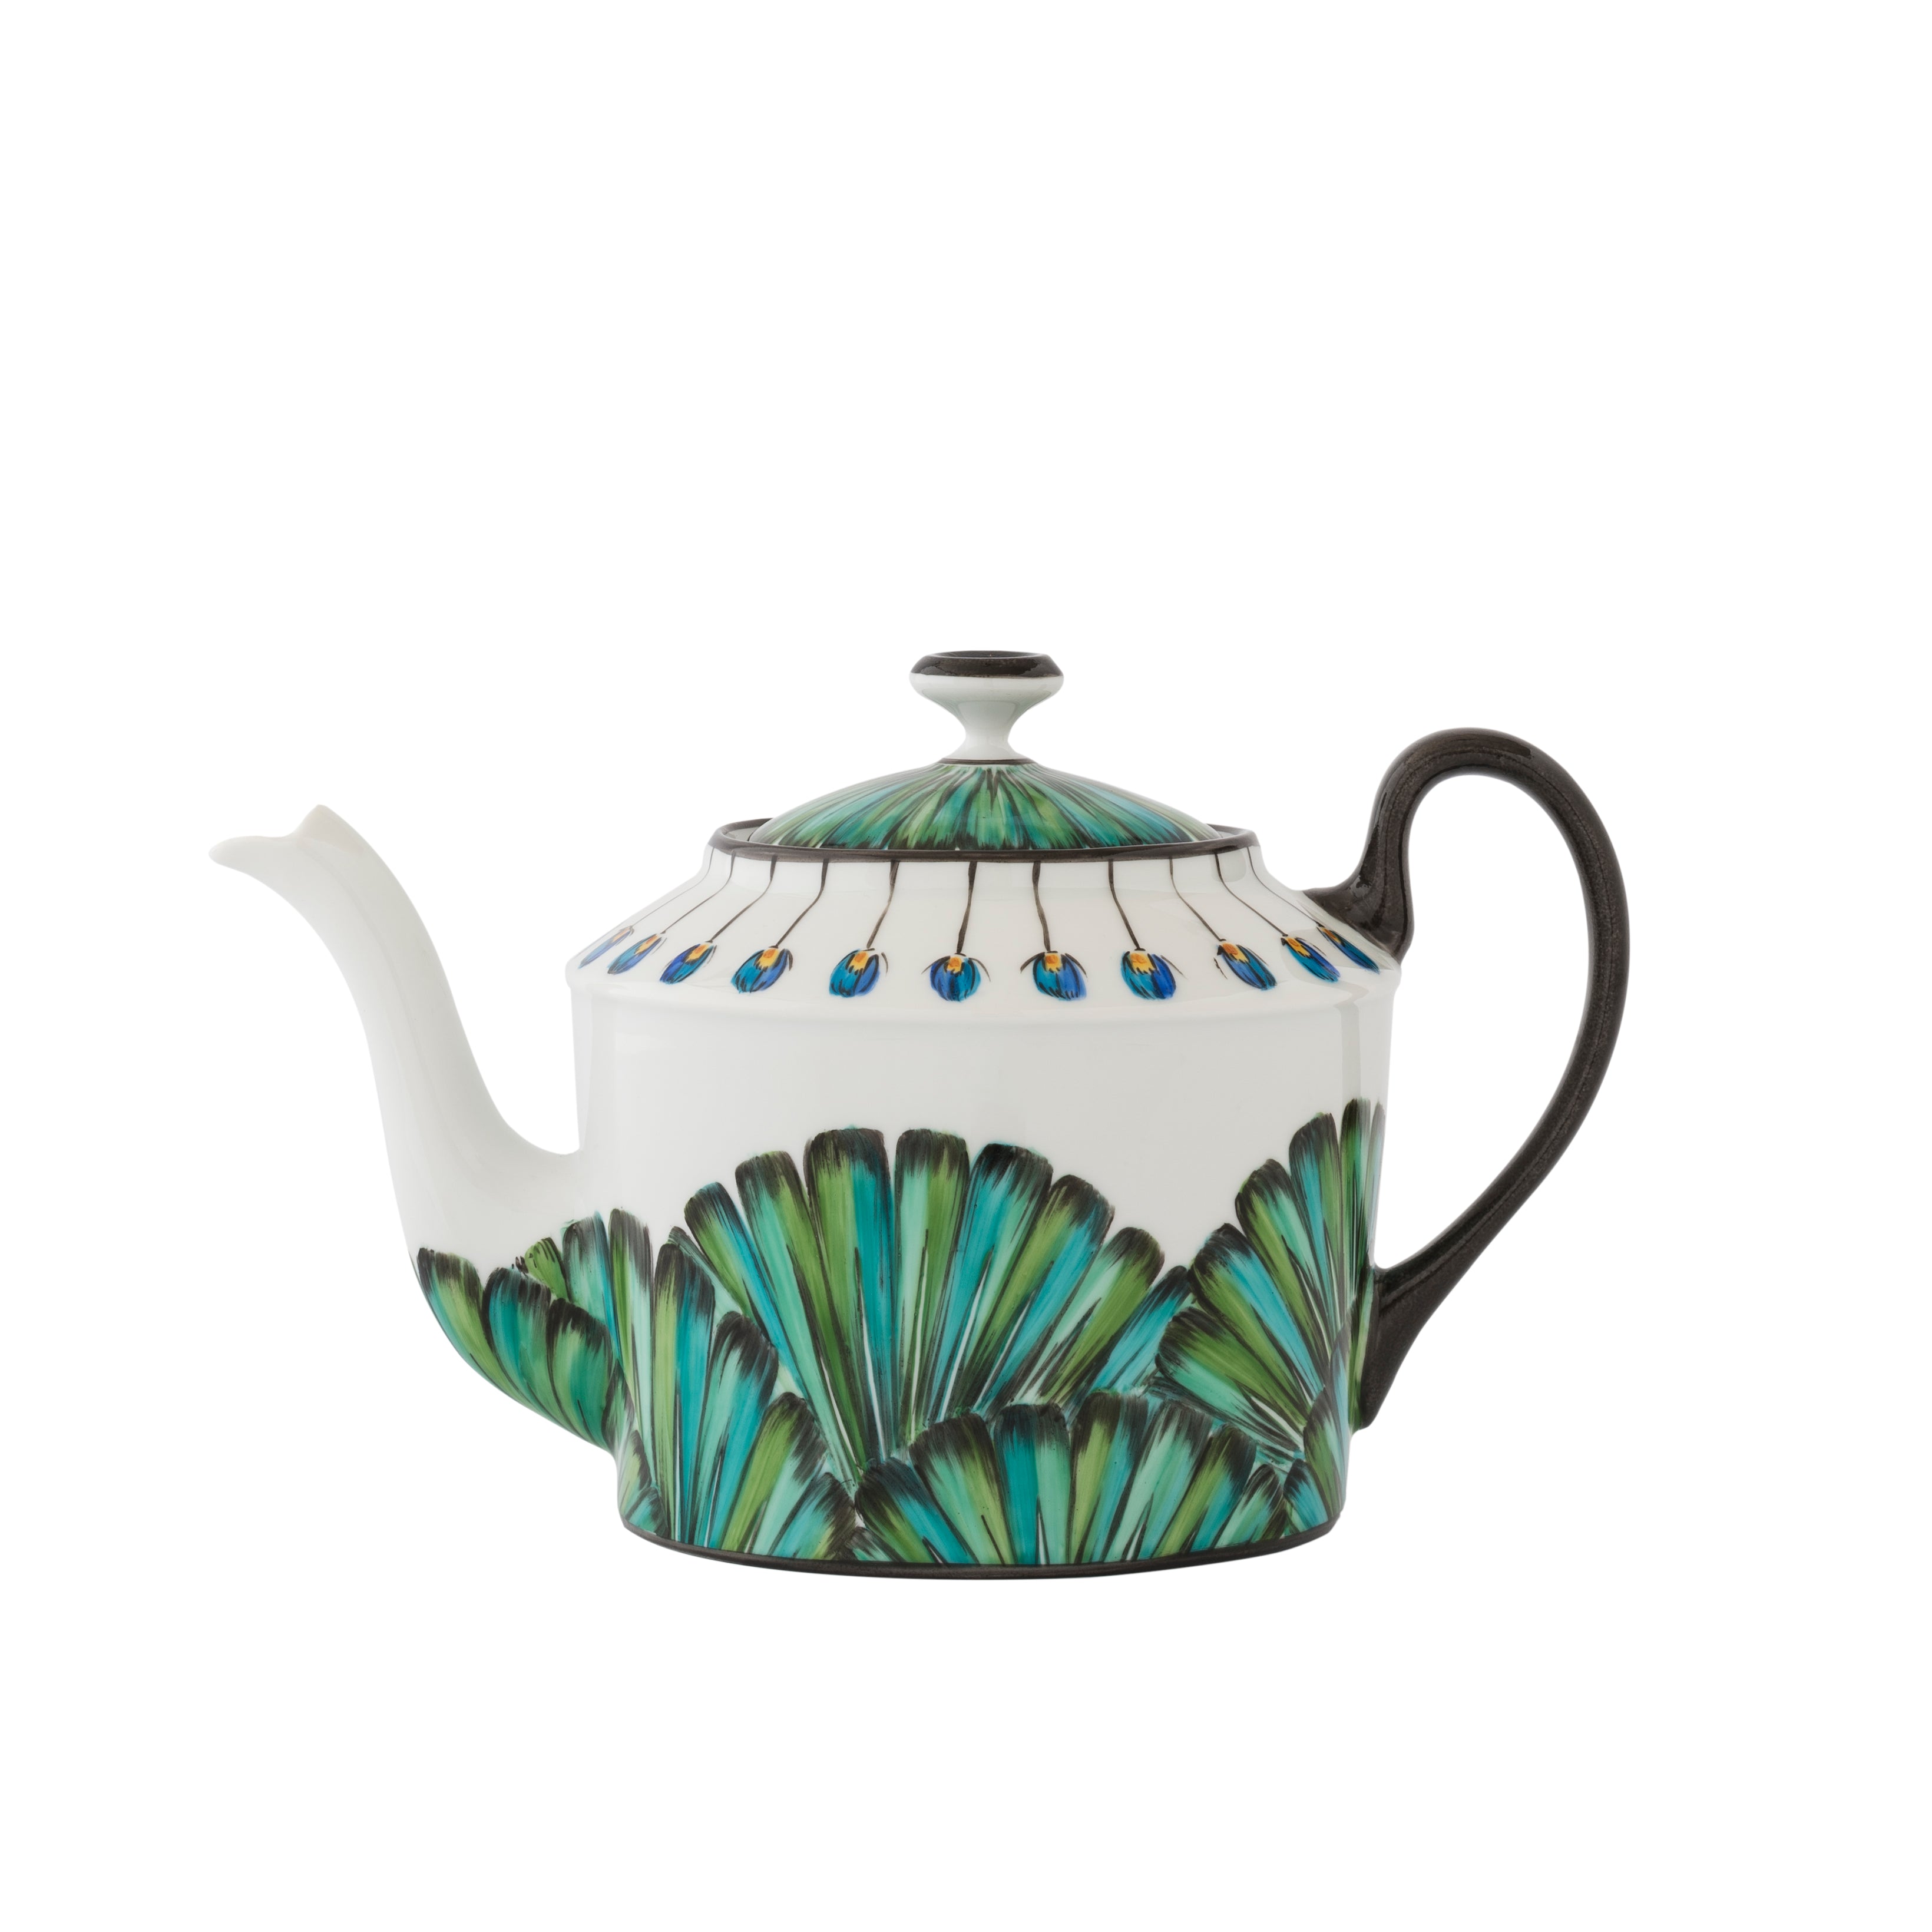 Bahia - Teapot
